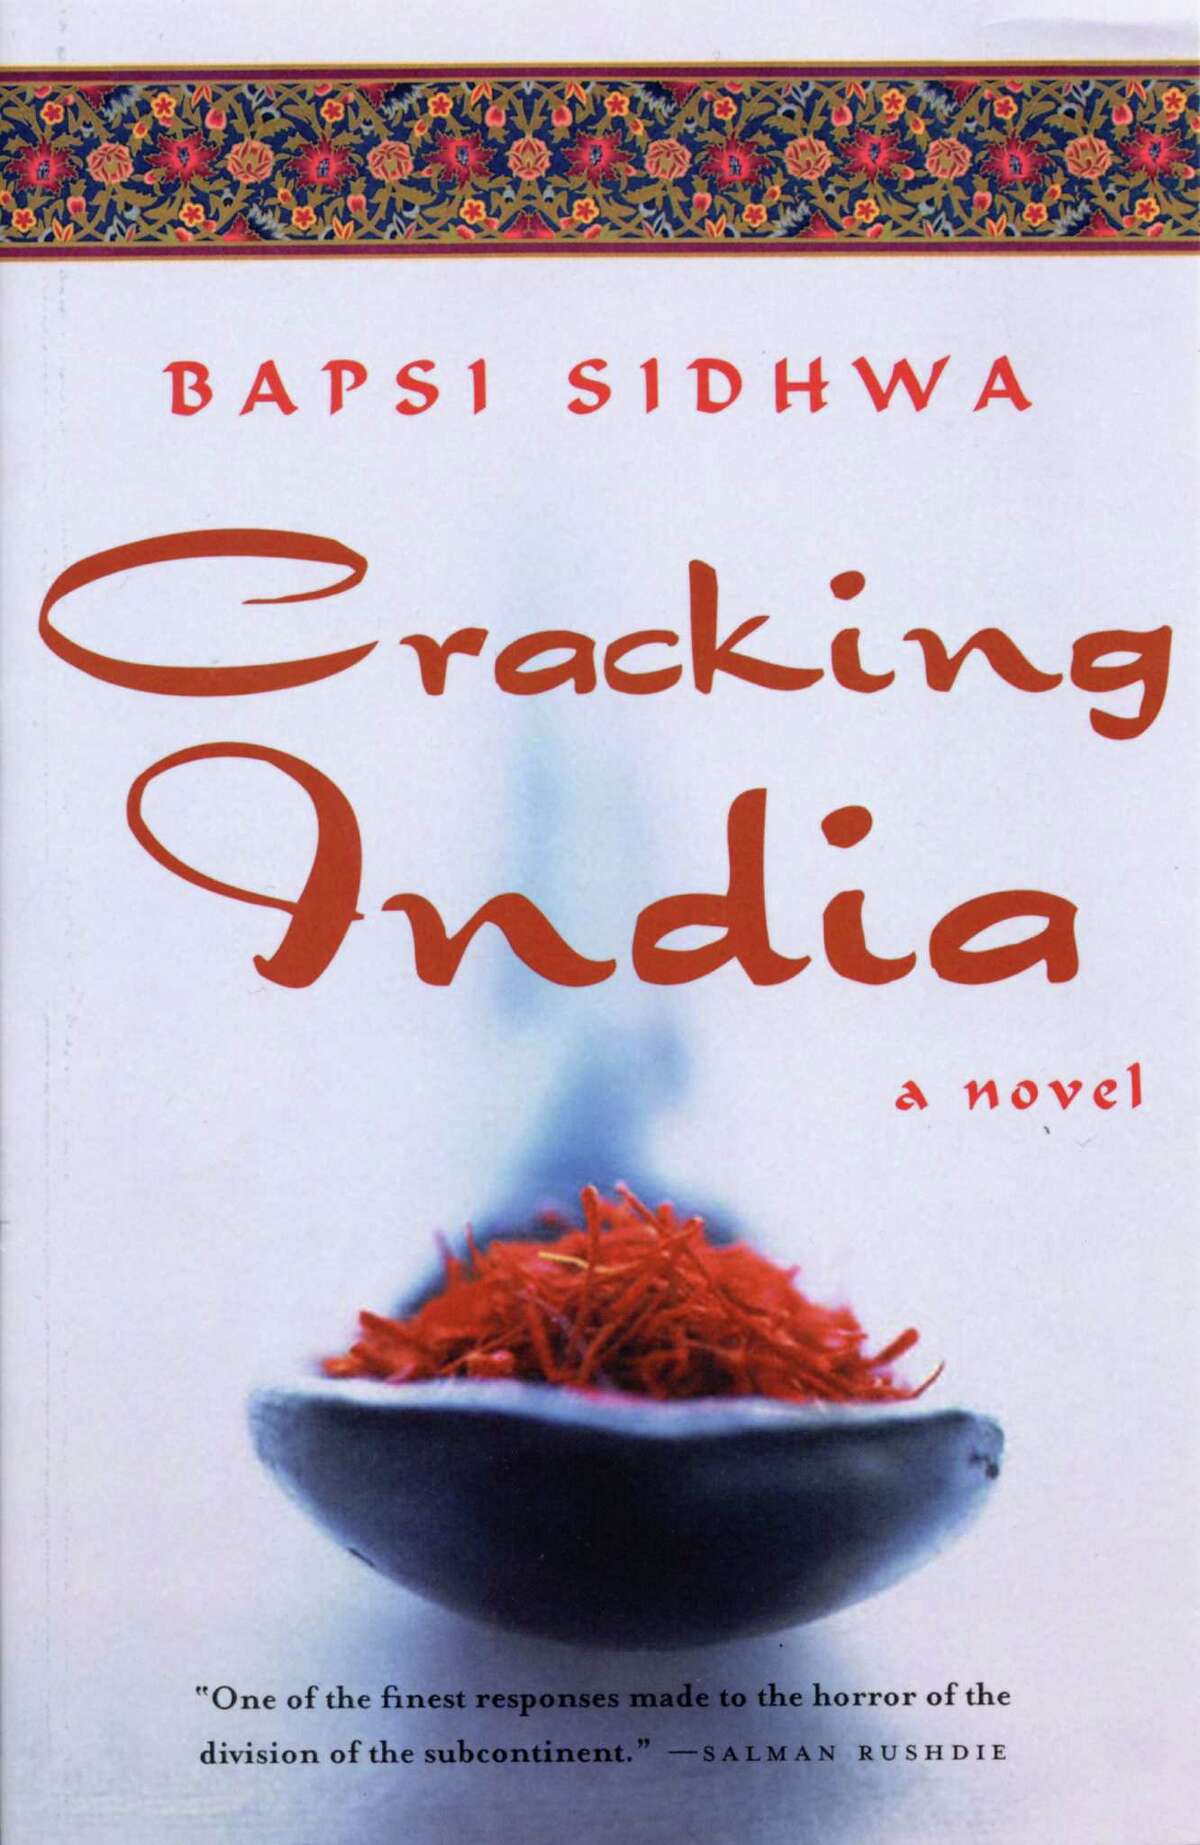 "Cracking India."